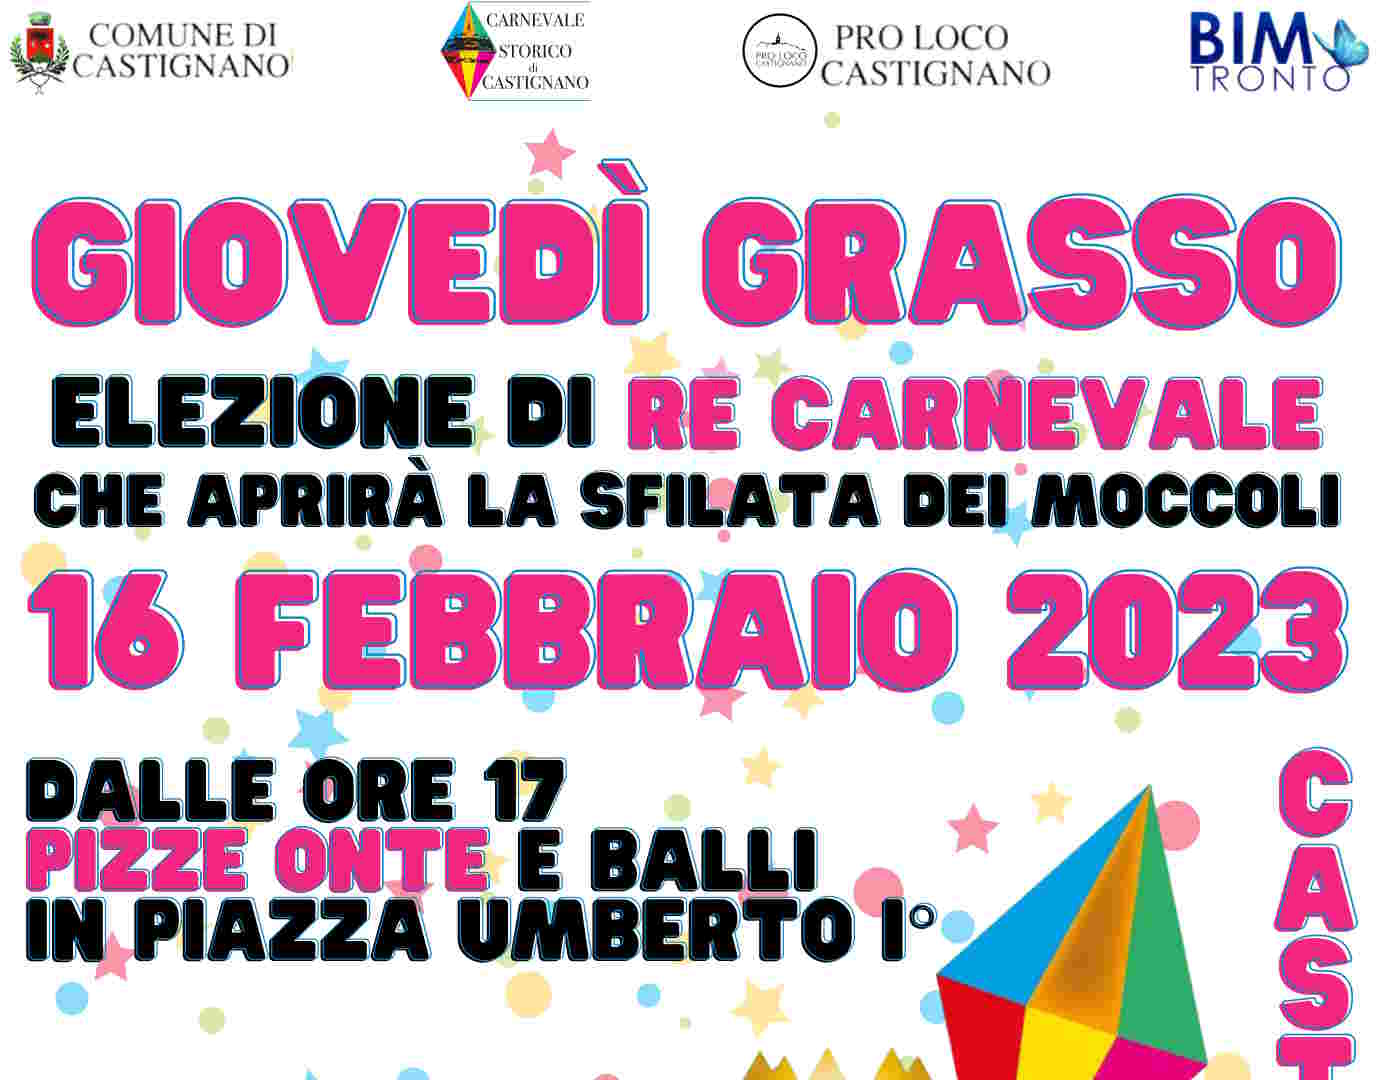 Proseguono gli appuntamenti del Carnevale Storico di Castignano